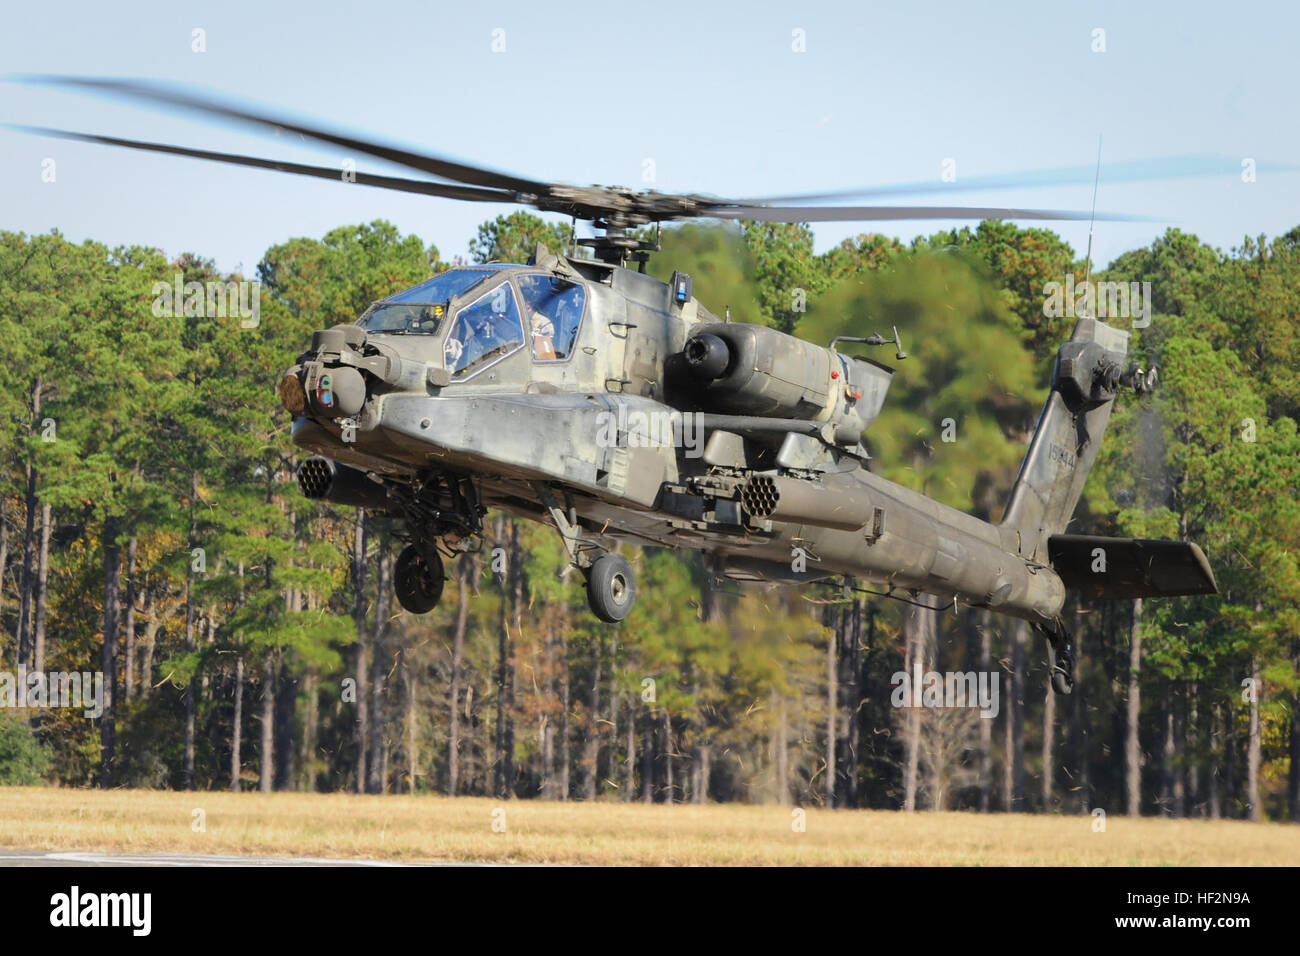 South Carolina National Guard, durchgeführt zusammen mit North Carolina und Georgia Nationalgarde-Einheiten "Carolina Thunder 14", ein Bohrer Wochenende, gemeinsame Übung 15. November 2014. Mehr als 30 Flugzeuge nahmen an der Masse Take-off von McEntire Joint National Guard Base, Eastover, S.C.-Einheiten durchgeführt, Luft und Boden Operations bei der Savannah River Site in Allendale, S.C. Die S.C. Air National Guard 169. Kämpfer-Flügel f-16 Fighting Falcons schlossen sich AH - 64D Apachen, CH-47 Chinook, UH-60 Black Hawks und mehr als 100 Infanteristen aus S.C. Army National Guard, mit Apachen zu trainieren Stockfoto